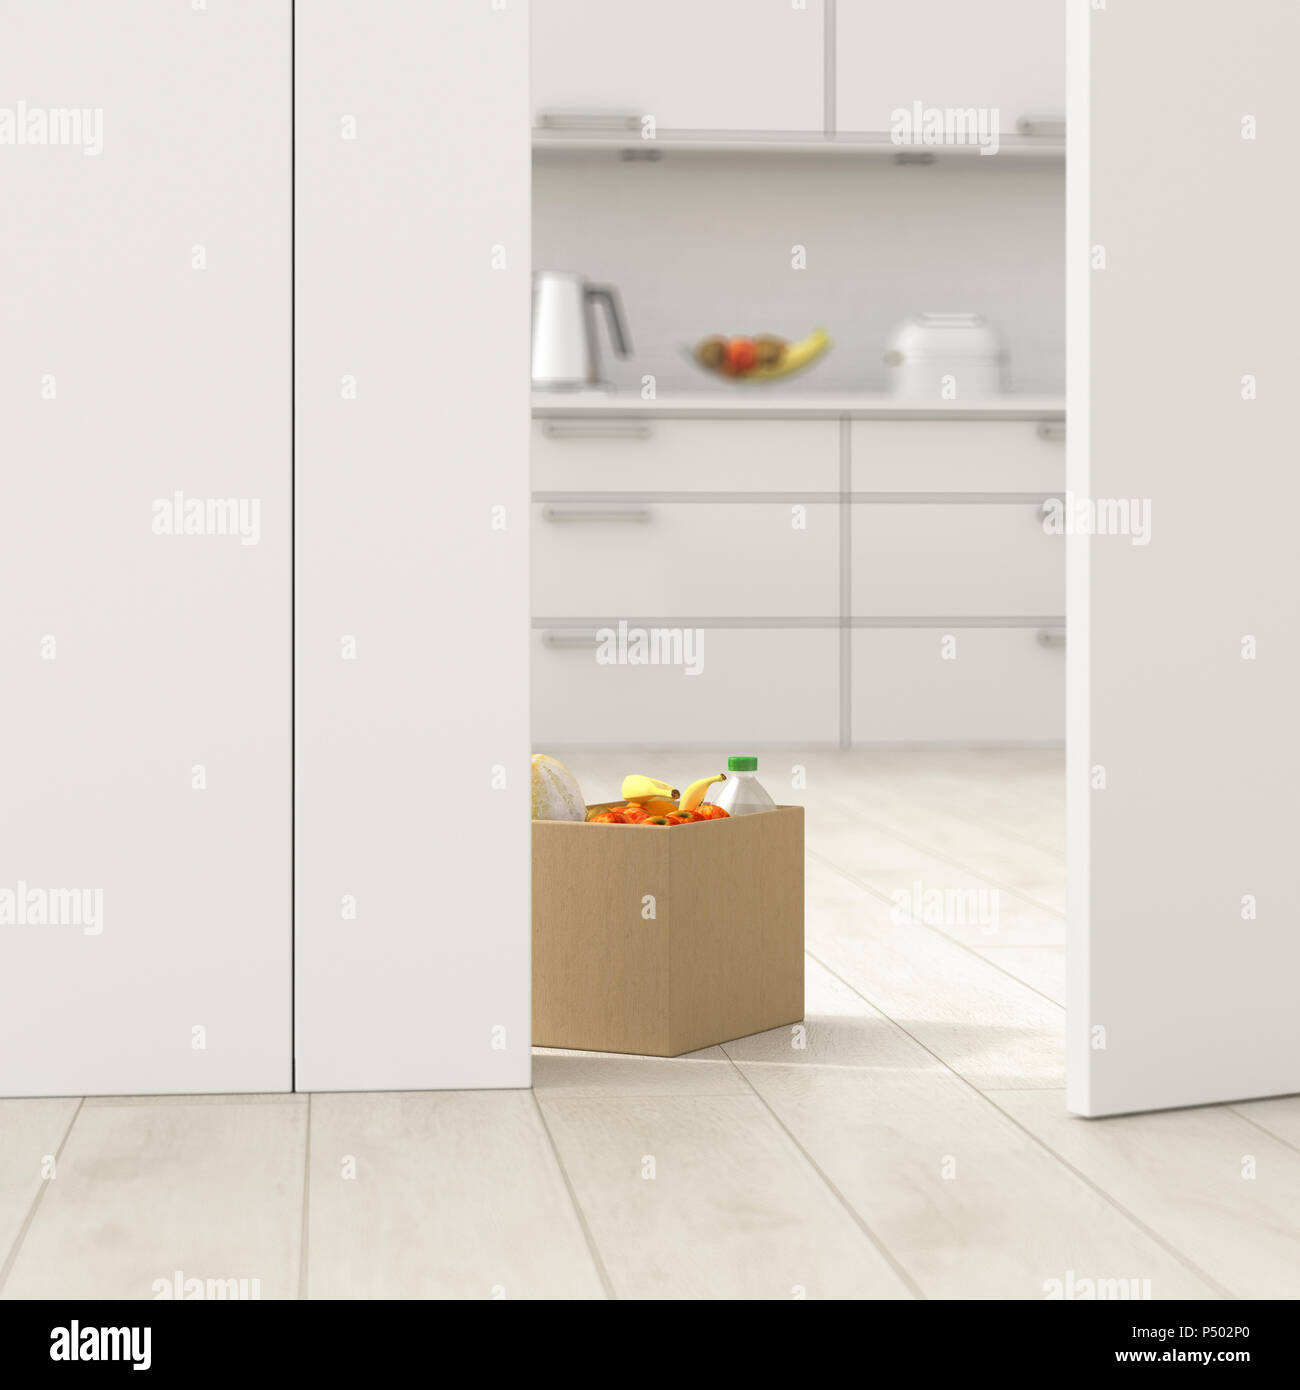 Boîte en carton avec des provisions dans la cuisine derrière la porte entrouverte, 3D Rendering Banque D'Images